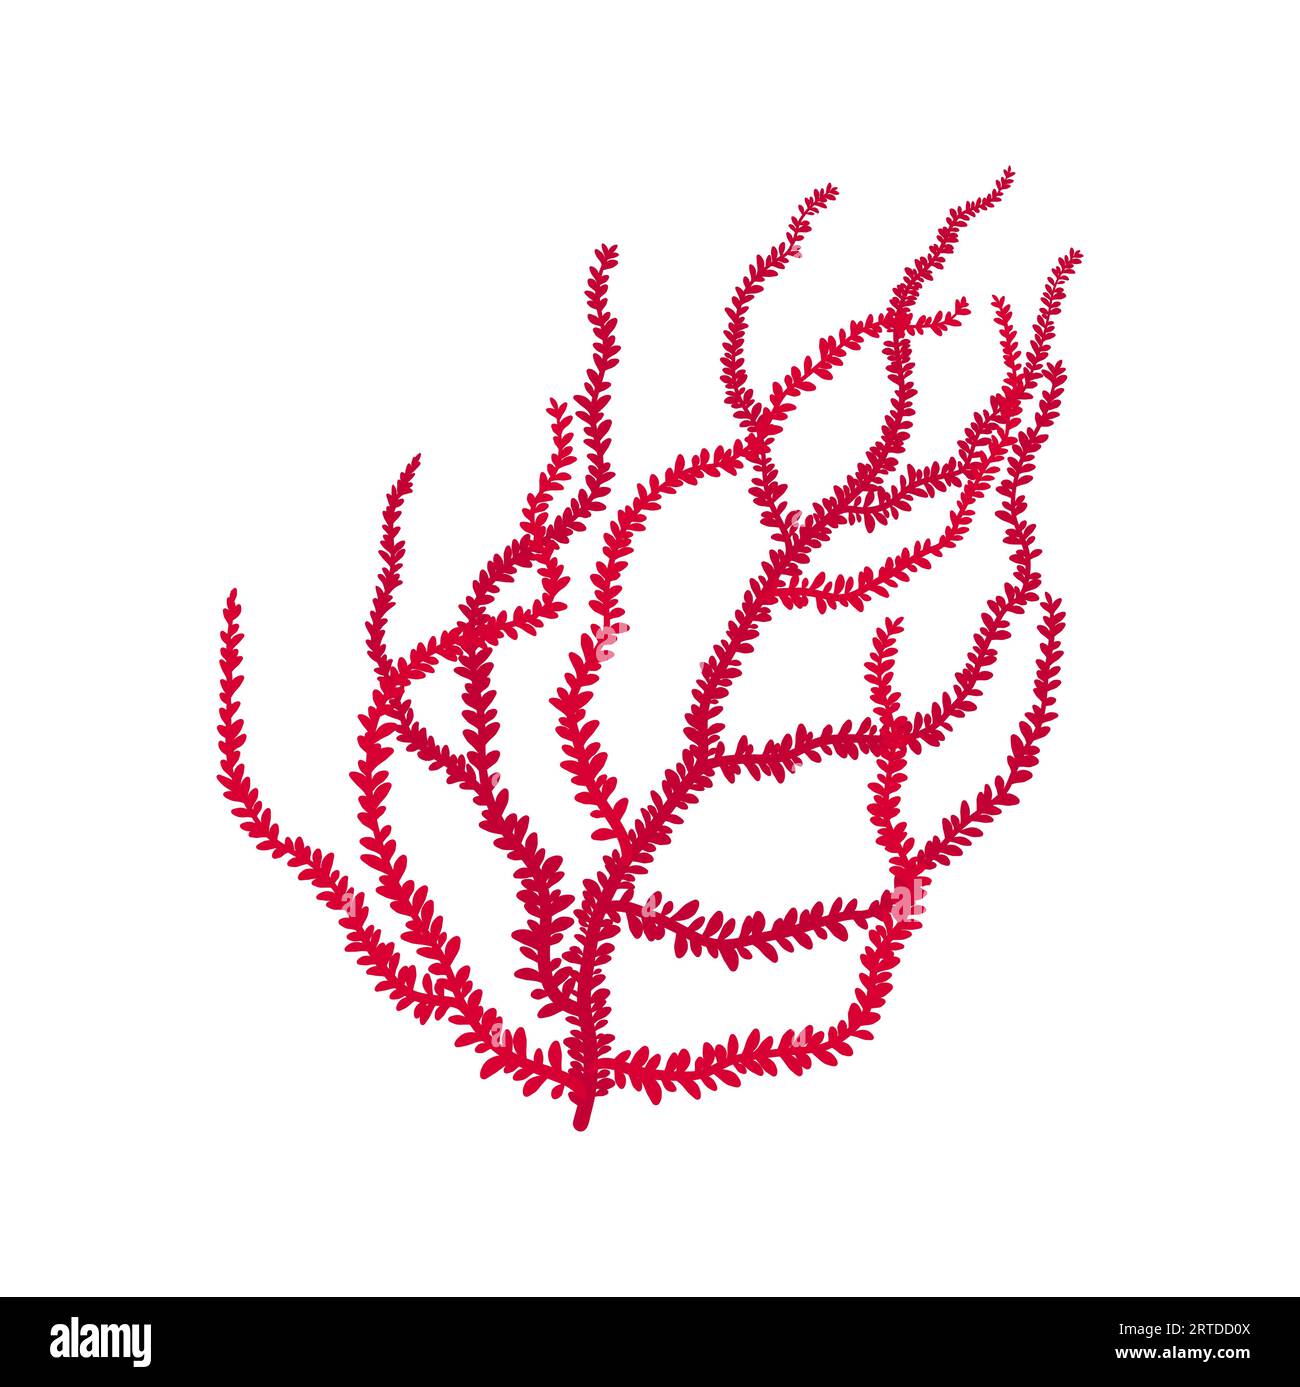 Corallo in pelle con bordi affilati icona rosa delle alghe. Acquario vettoriale e decorazione del fondo marino. Organismo sottomarino acquatico, alghe marine Illustrazione Vettoriale